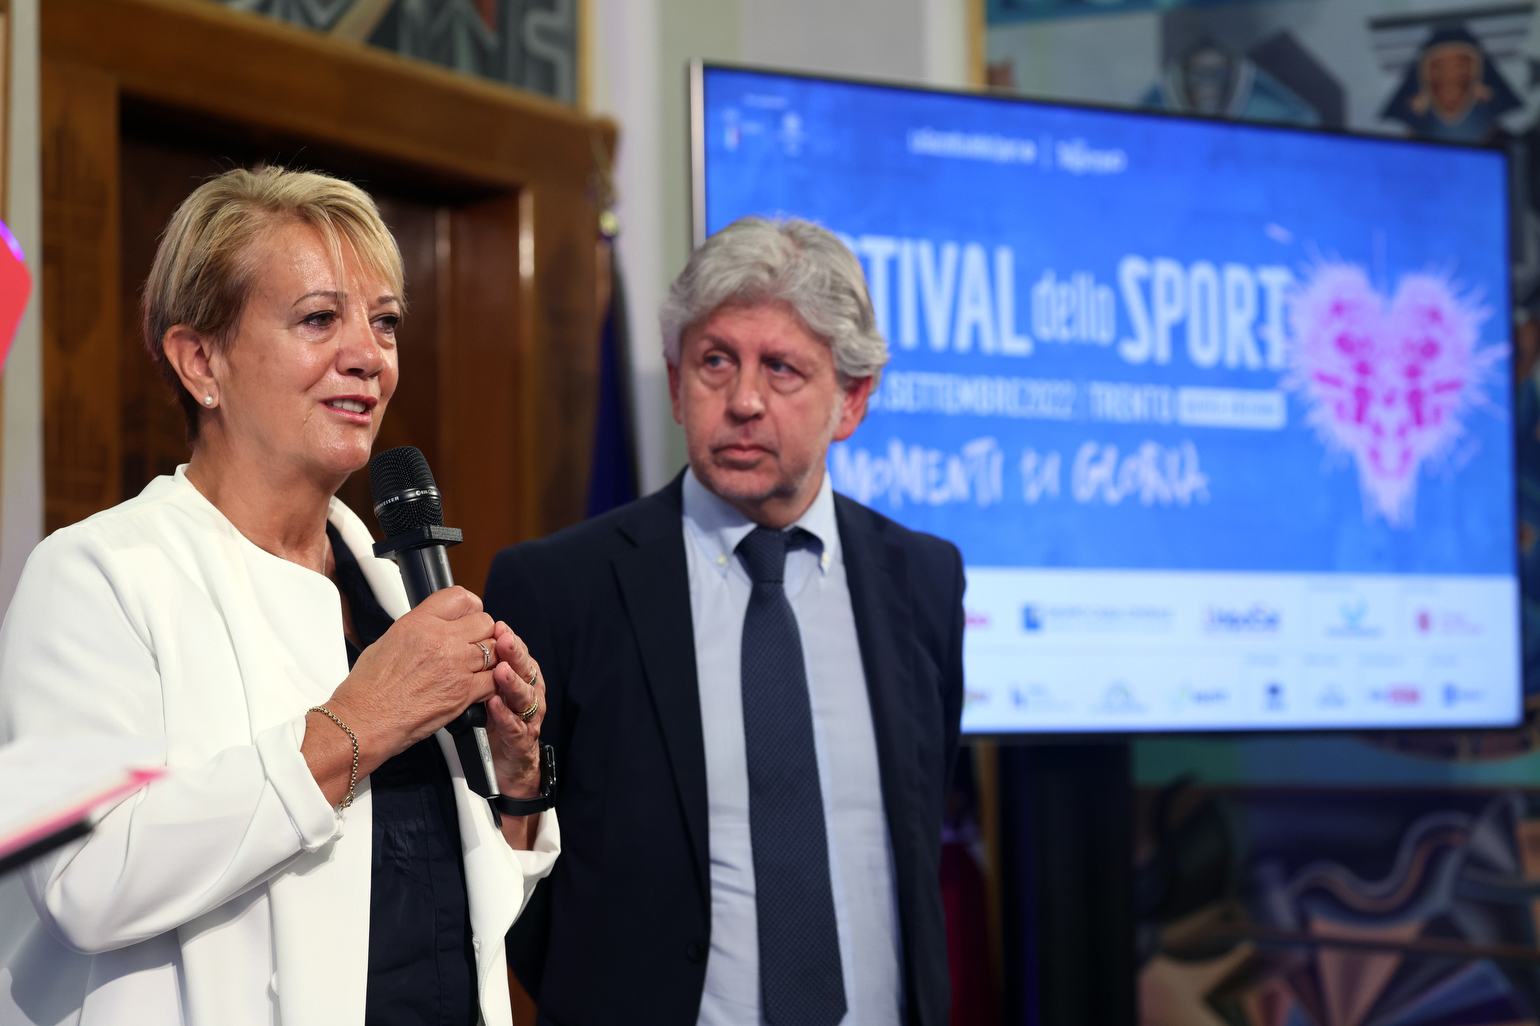 Festival dello Sport 2022: presso la Sala Depero della Provincia, il punto sul programma dedicato al tema “Momenti di gloria” (Paola Mora, Massimo Bernardoni)